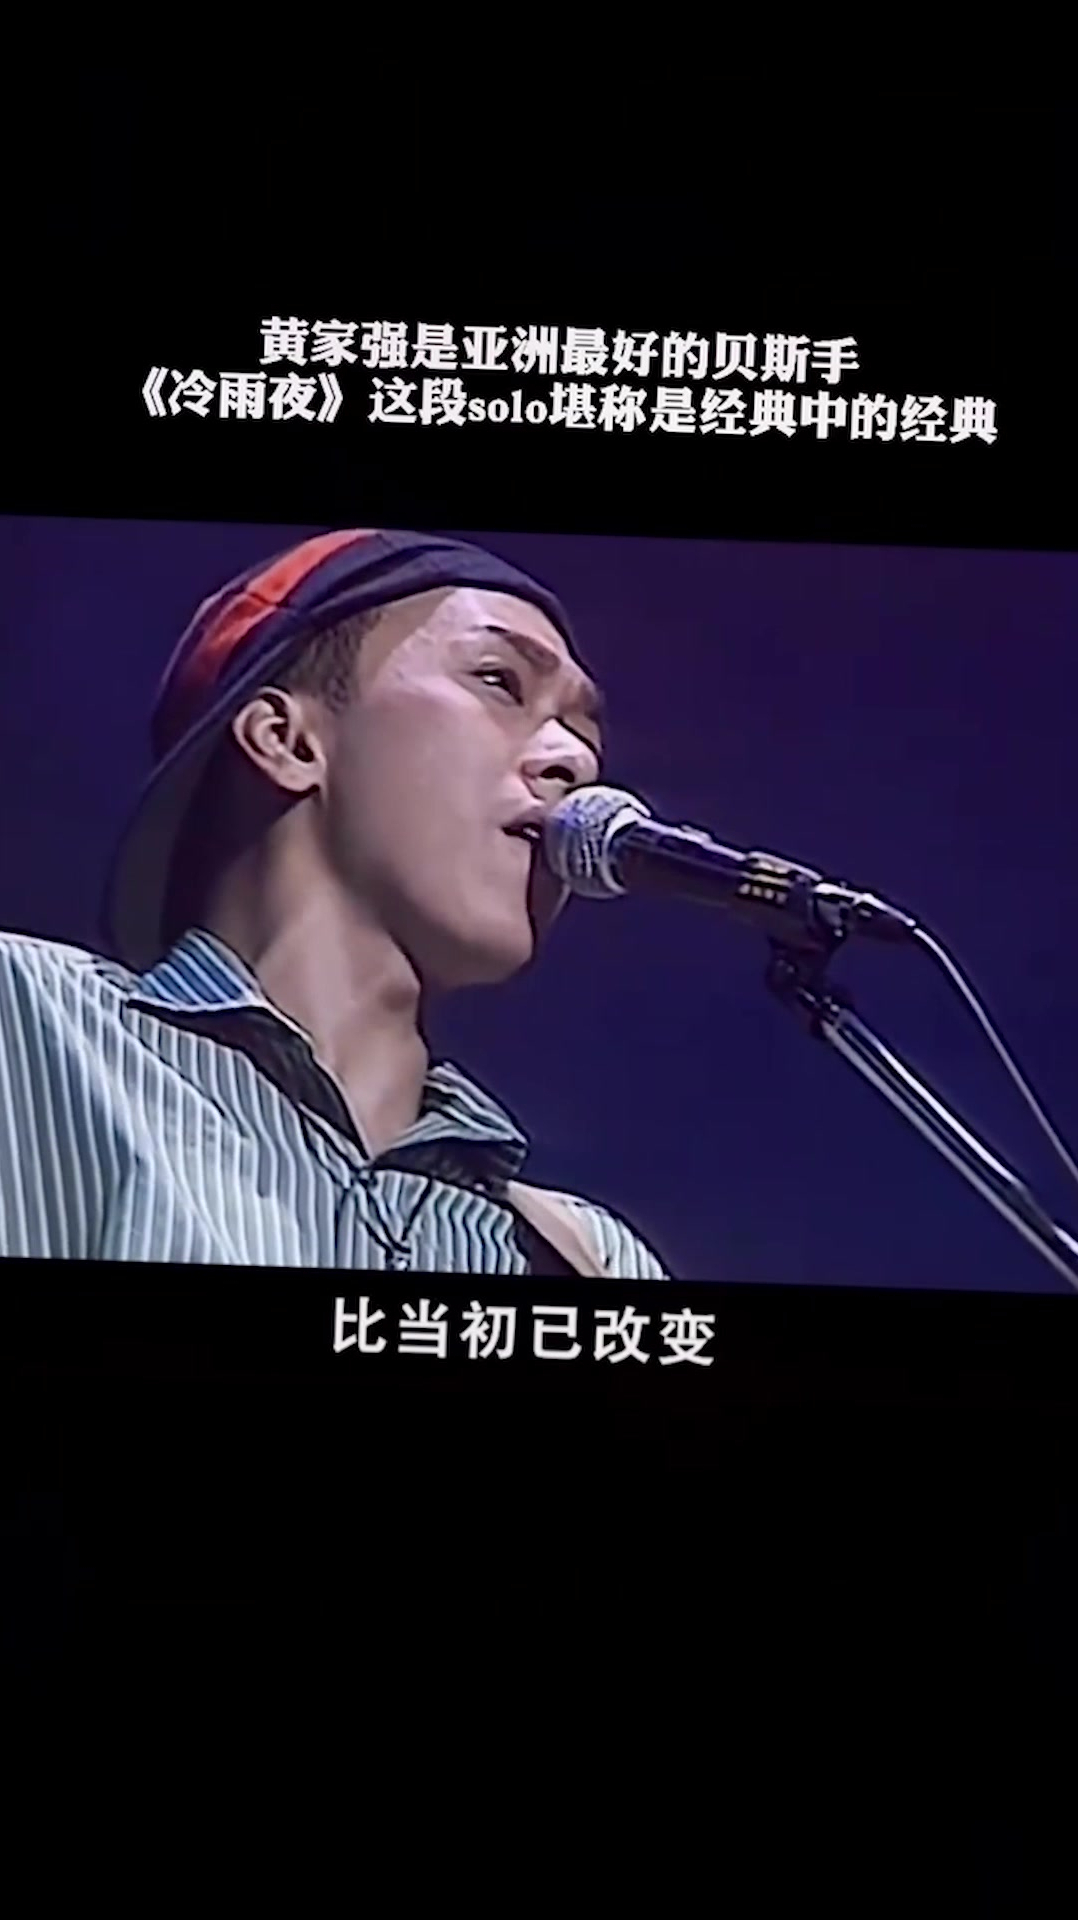 黄家强是亚洲最好的贝斯手,《冷雨夜》这段solo堪称经典中的经典